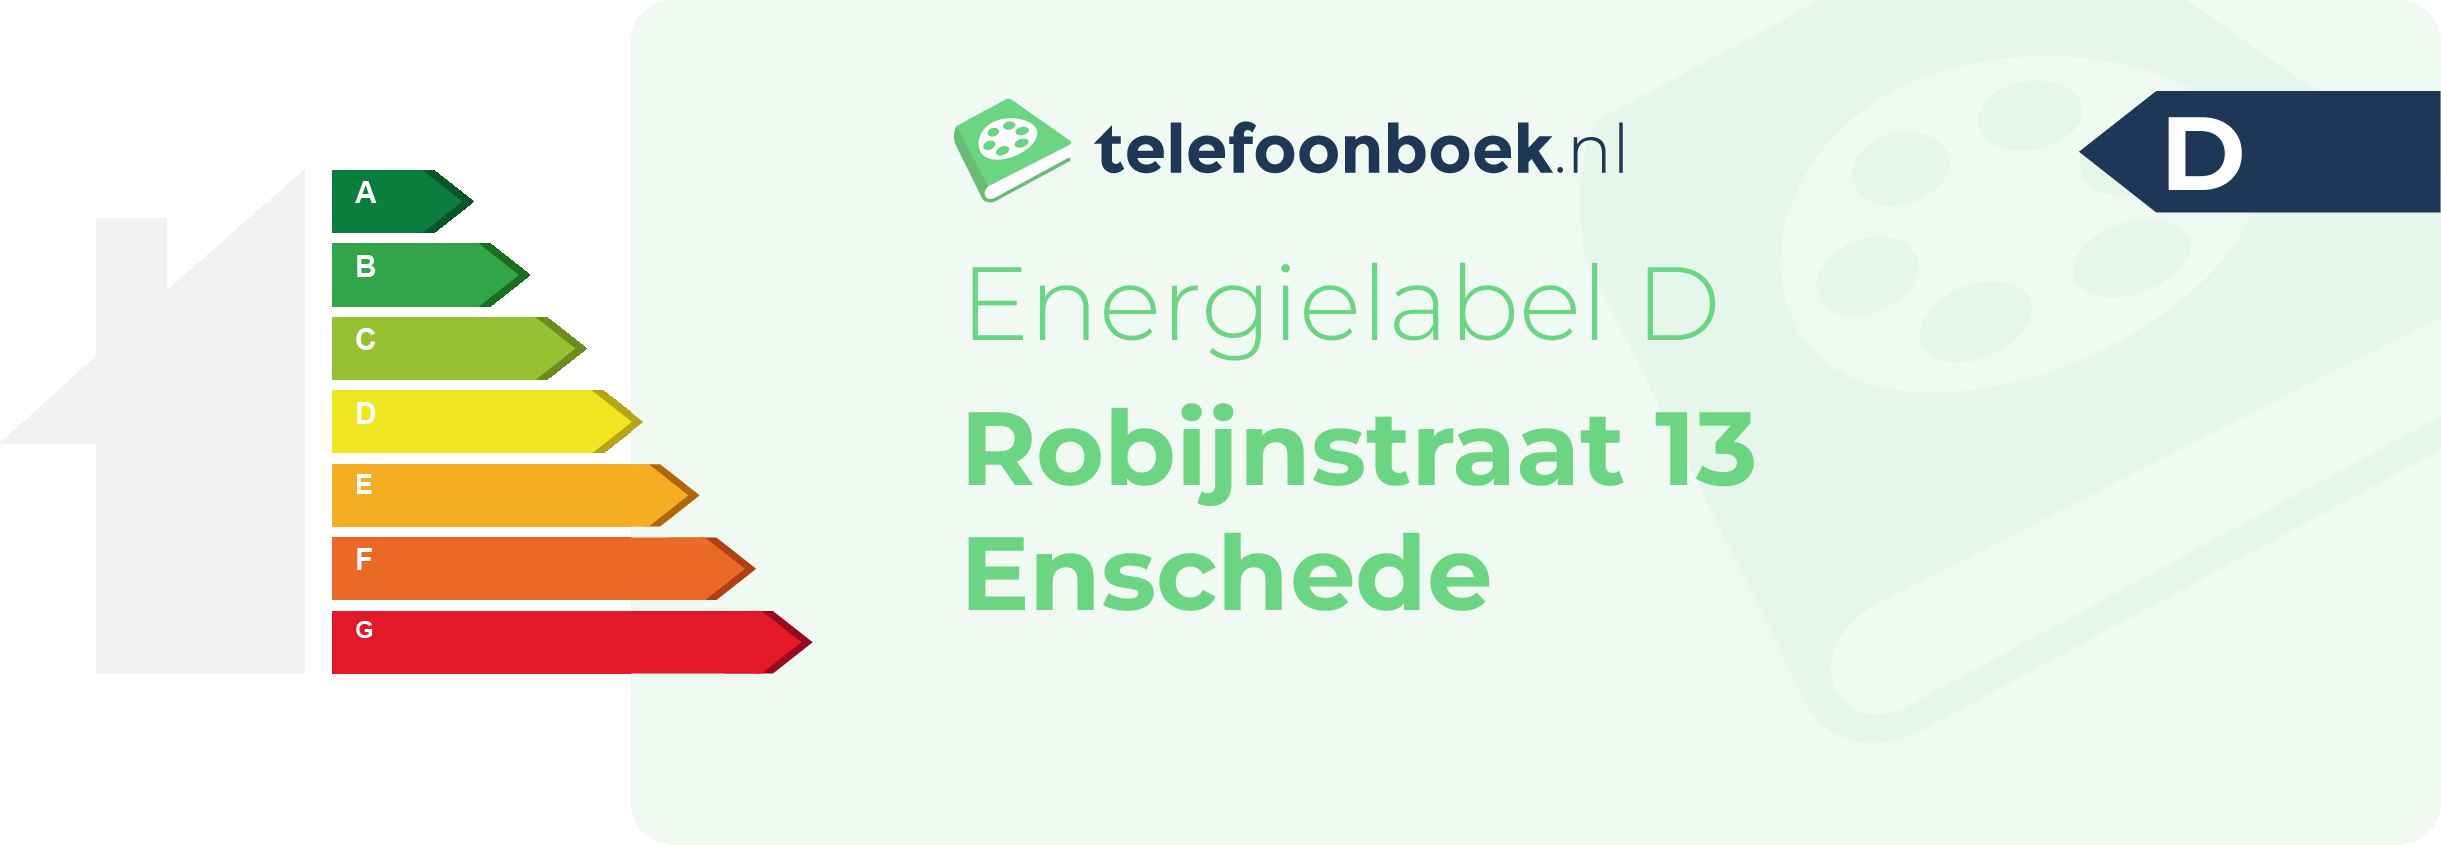 Energielabel Robijnstraat 13 Enschede